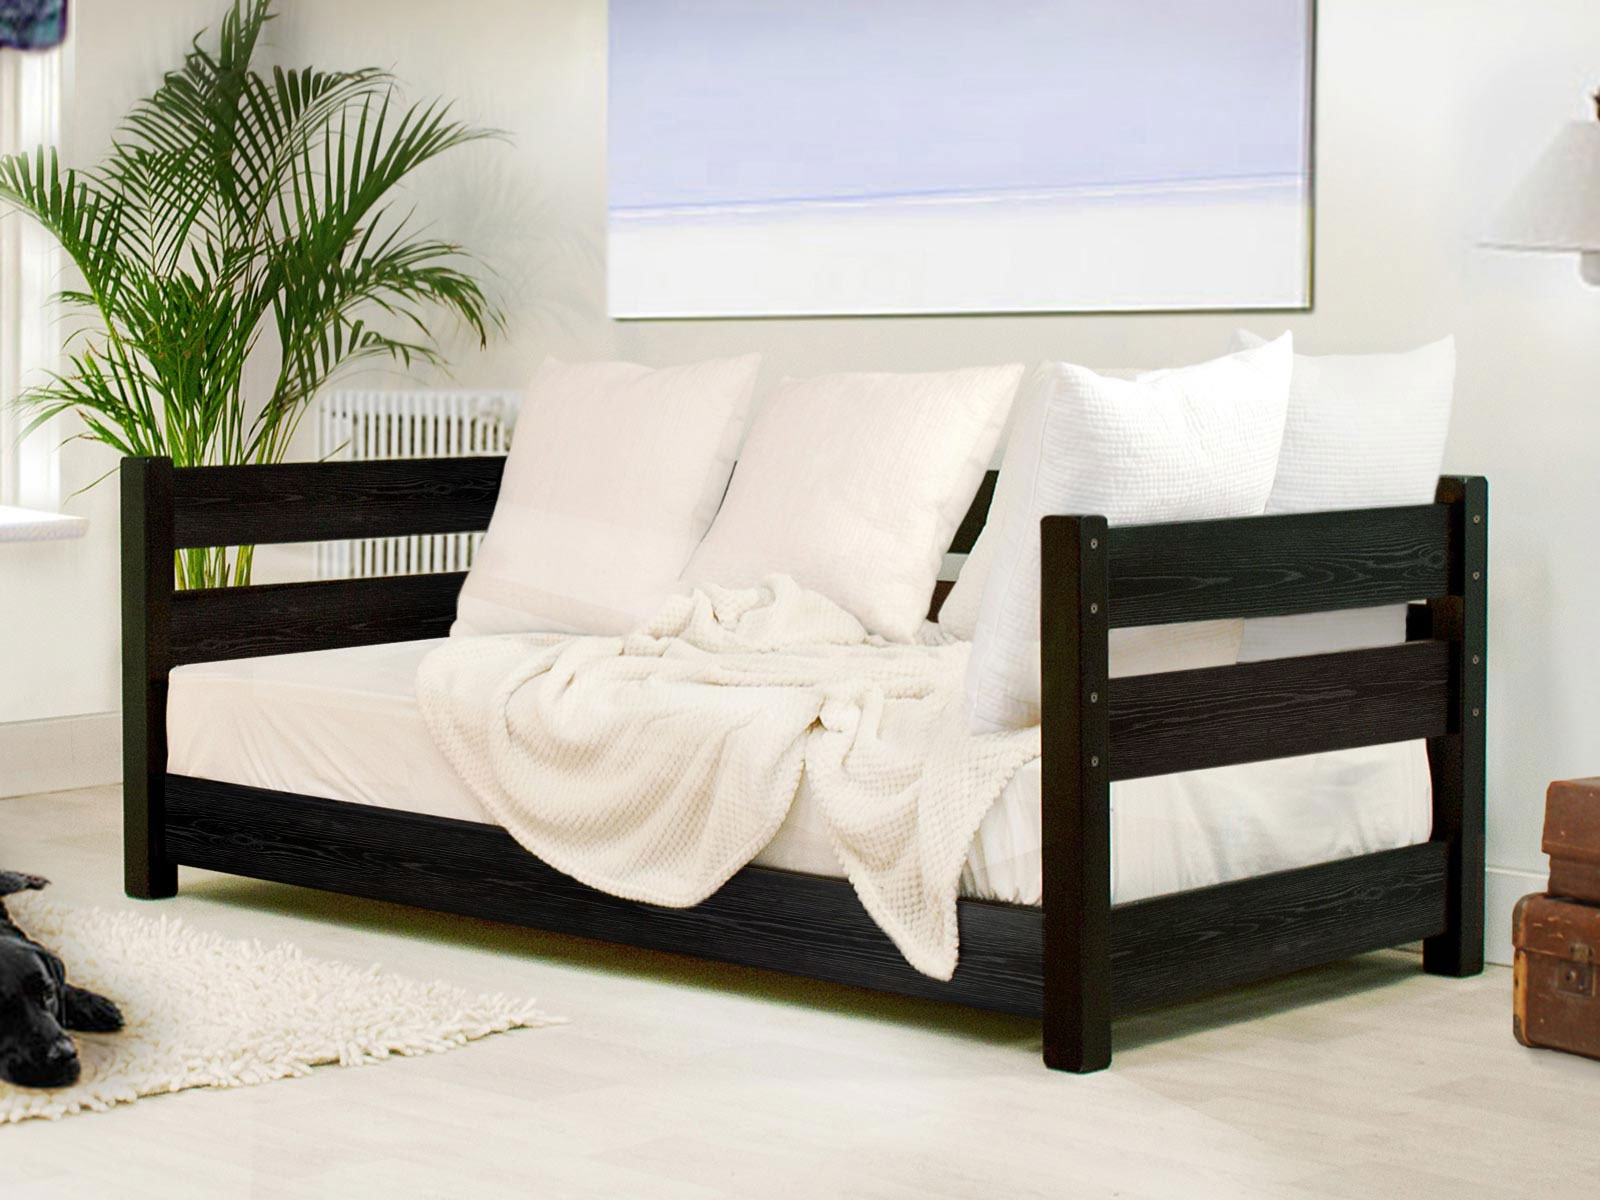 honning Uartig Zeal Modern Daybed | Get Laid Beds